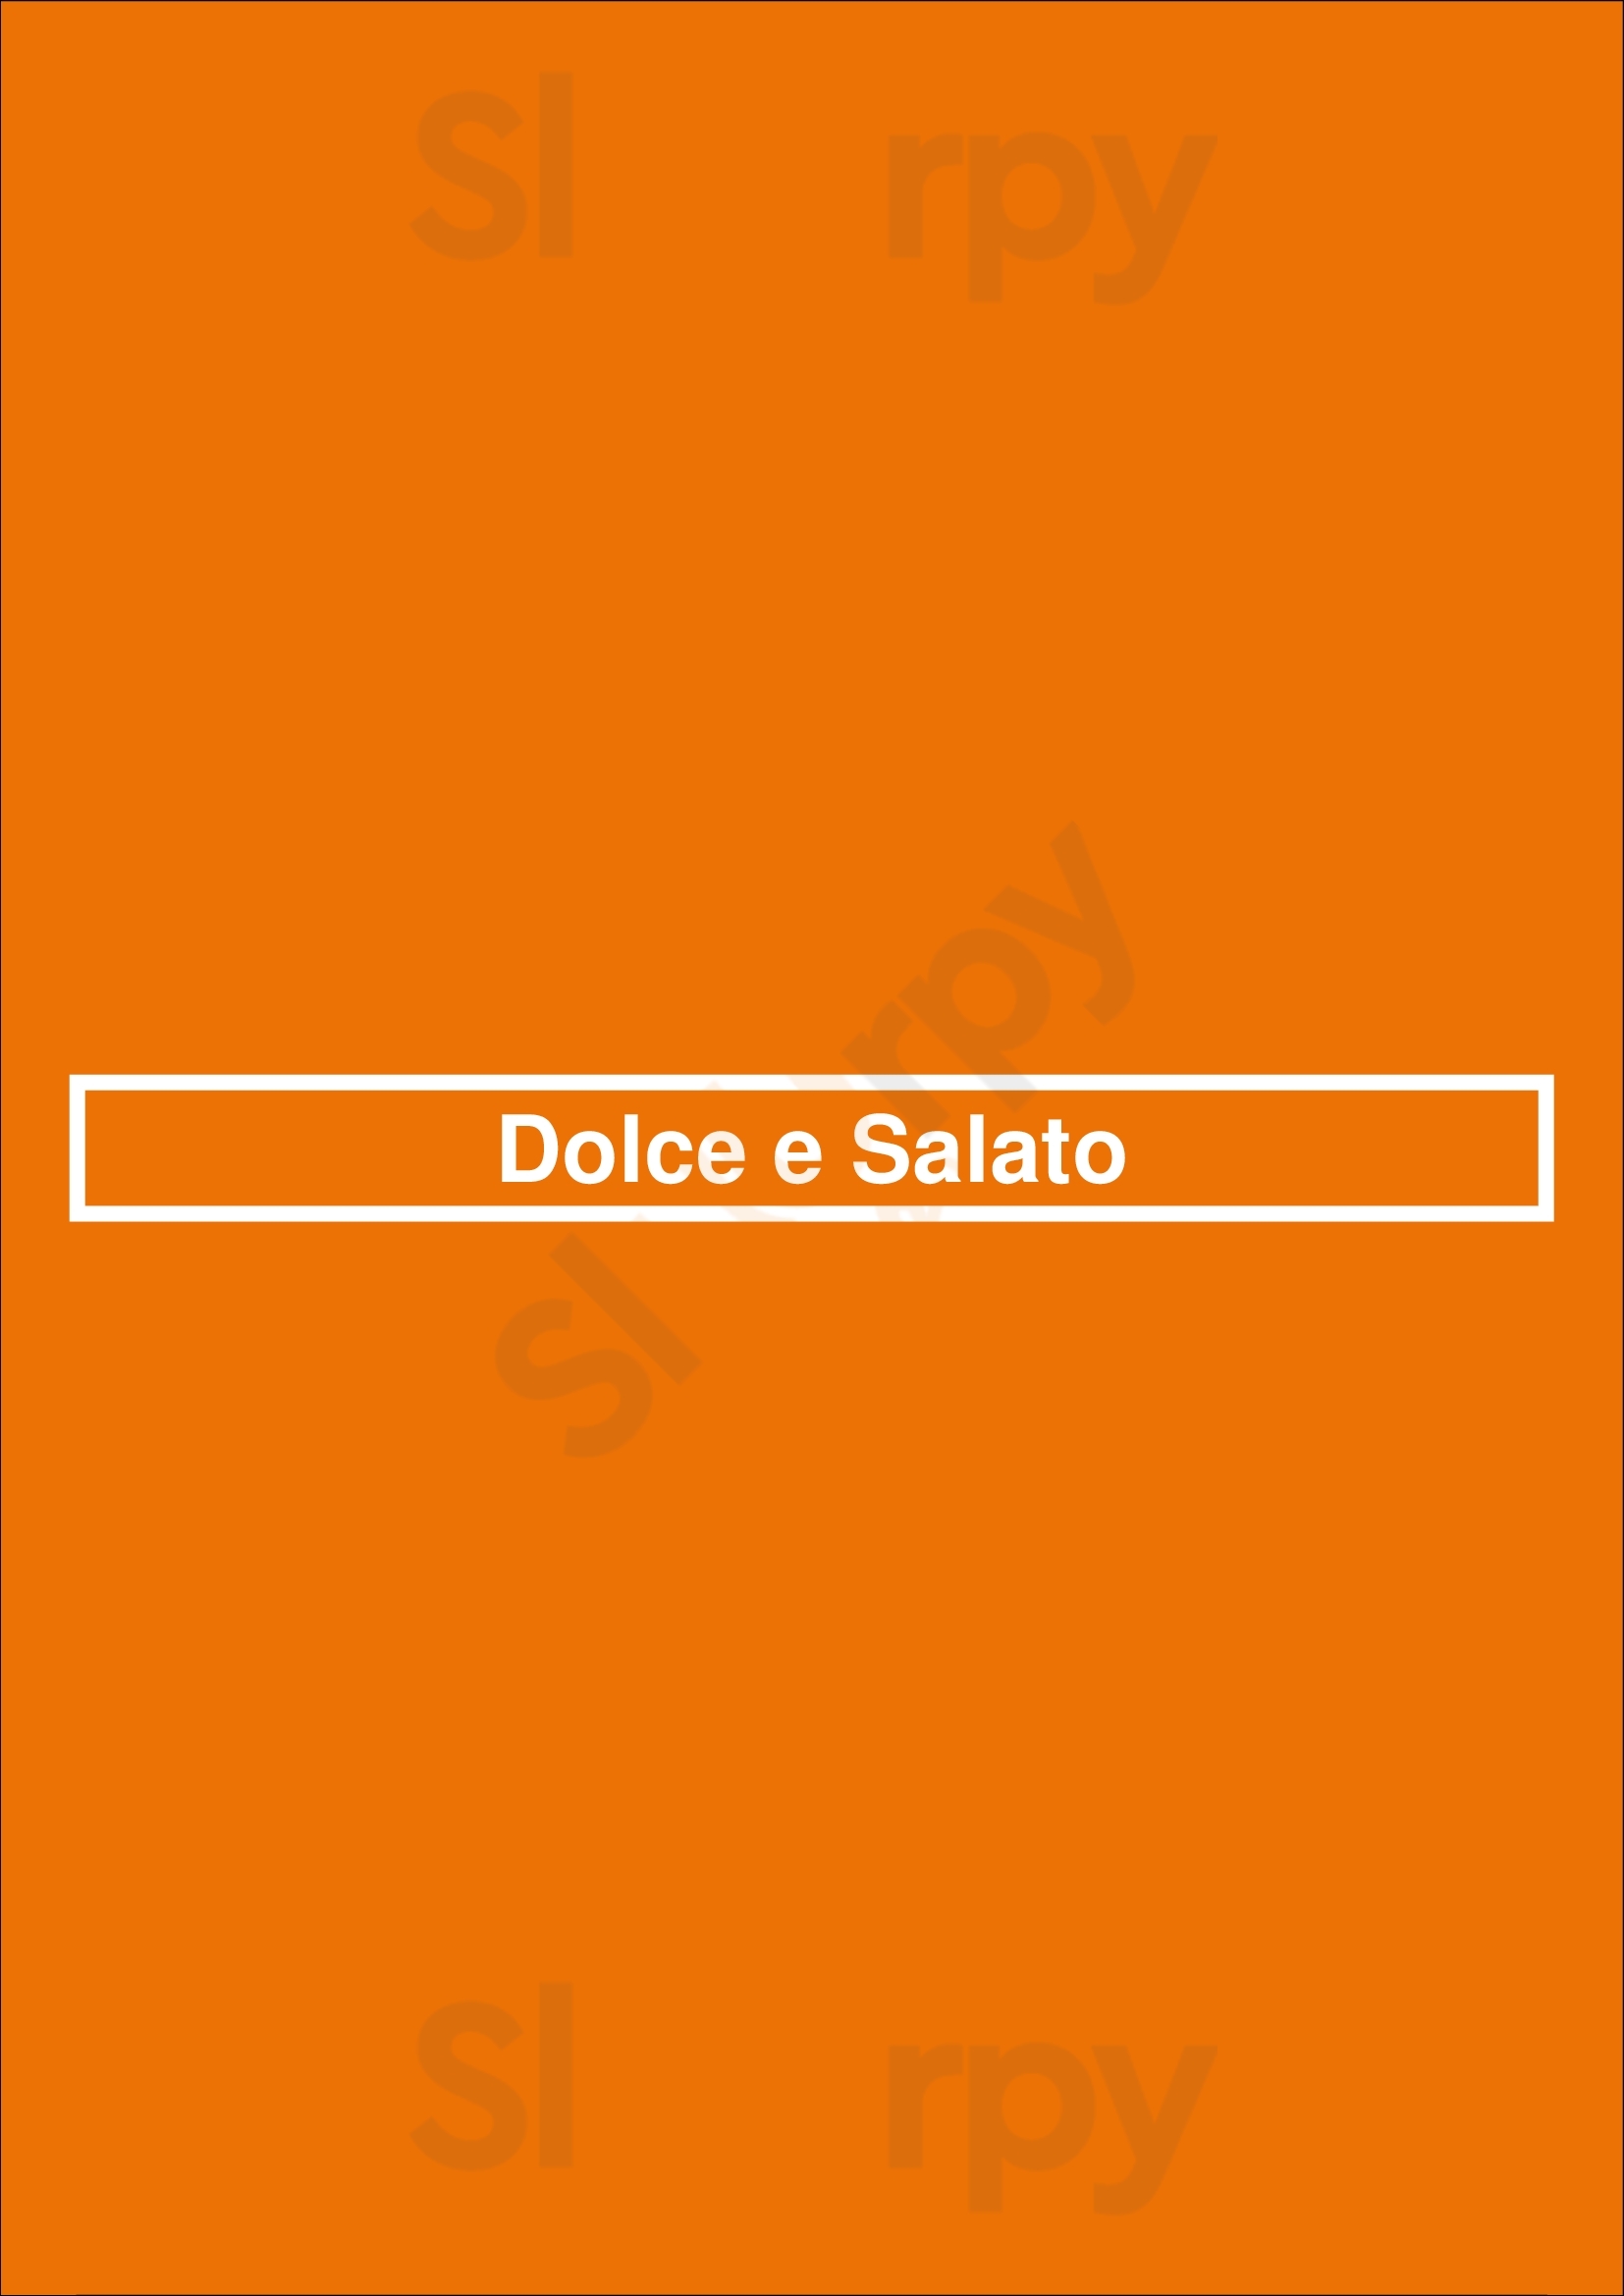 Dolce E Salato Breda Menu - 1